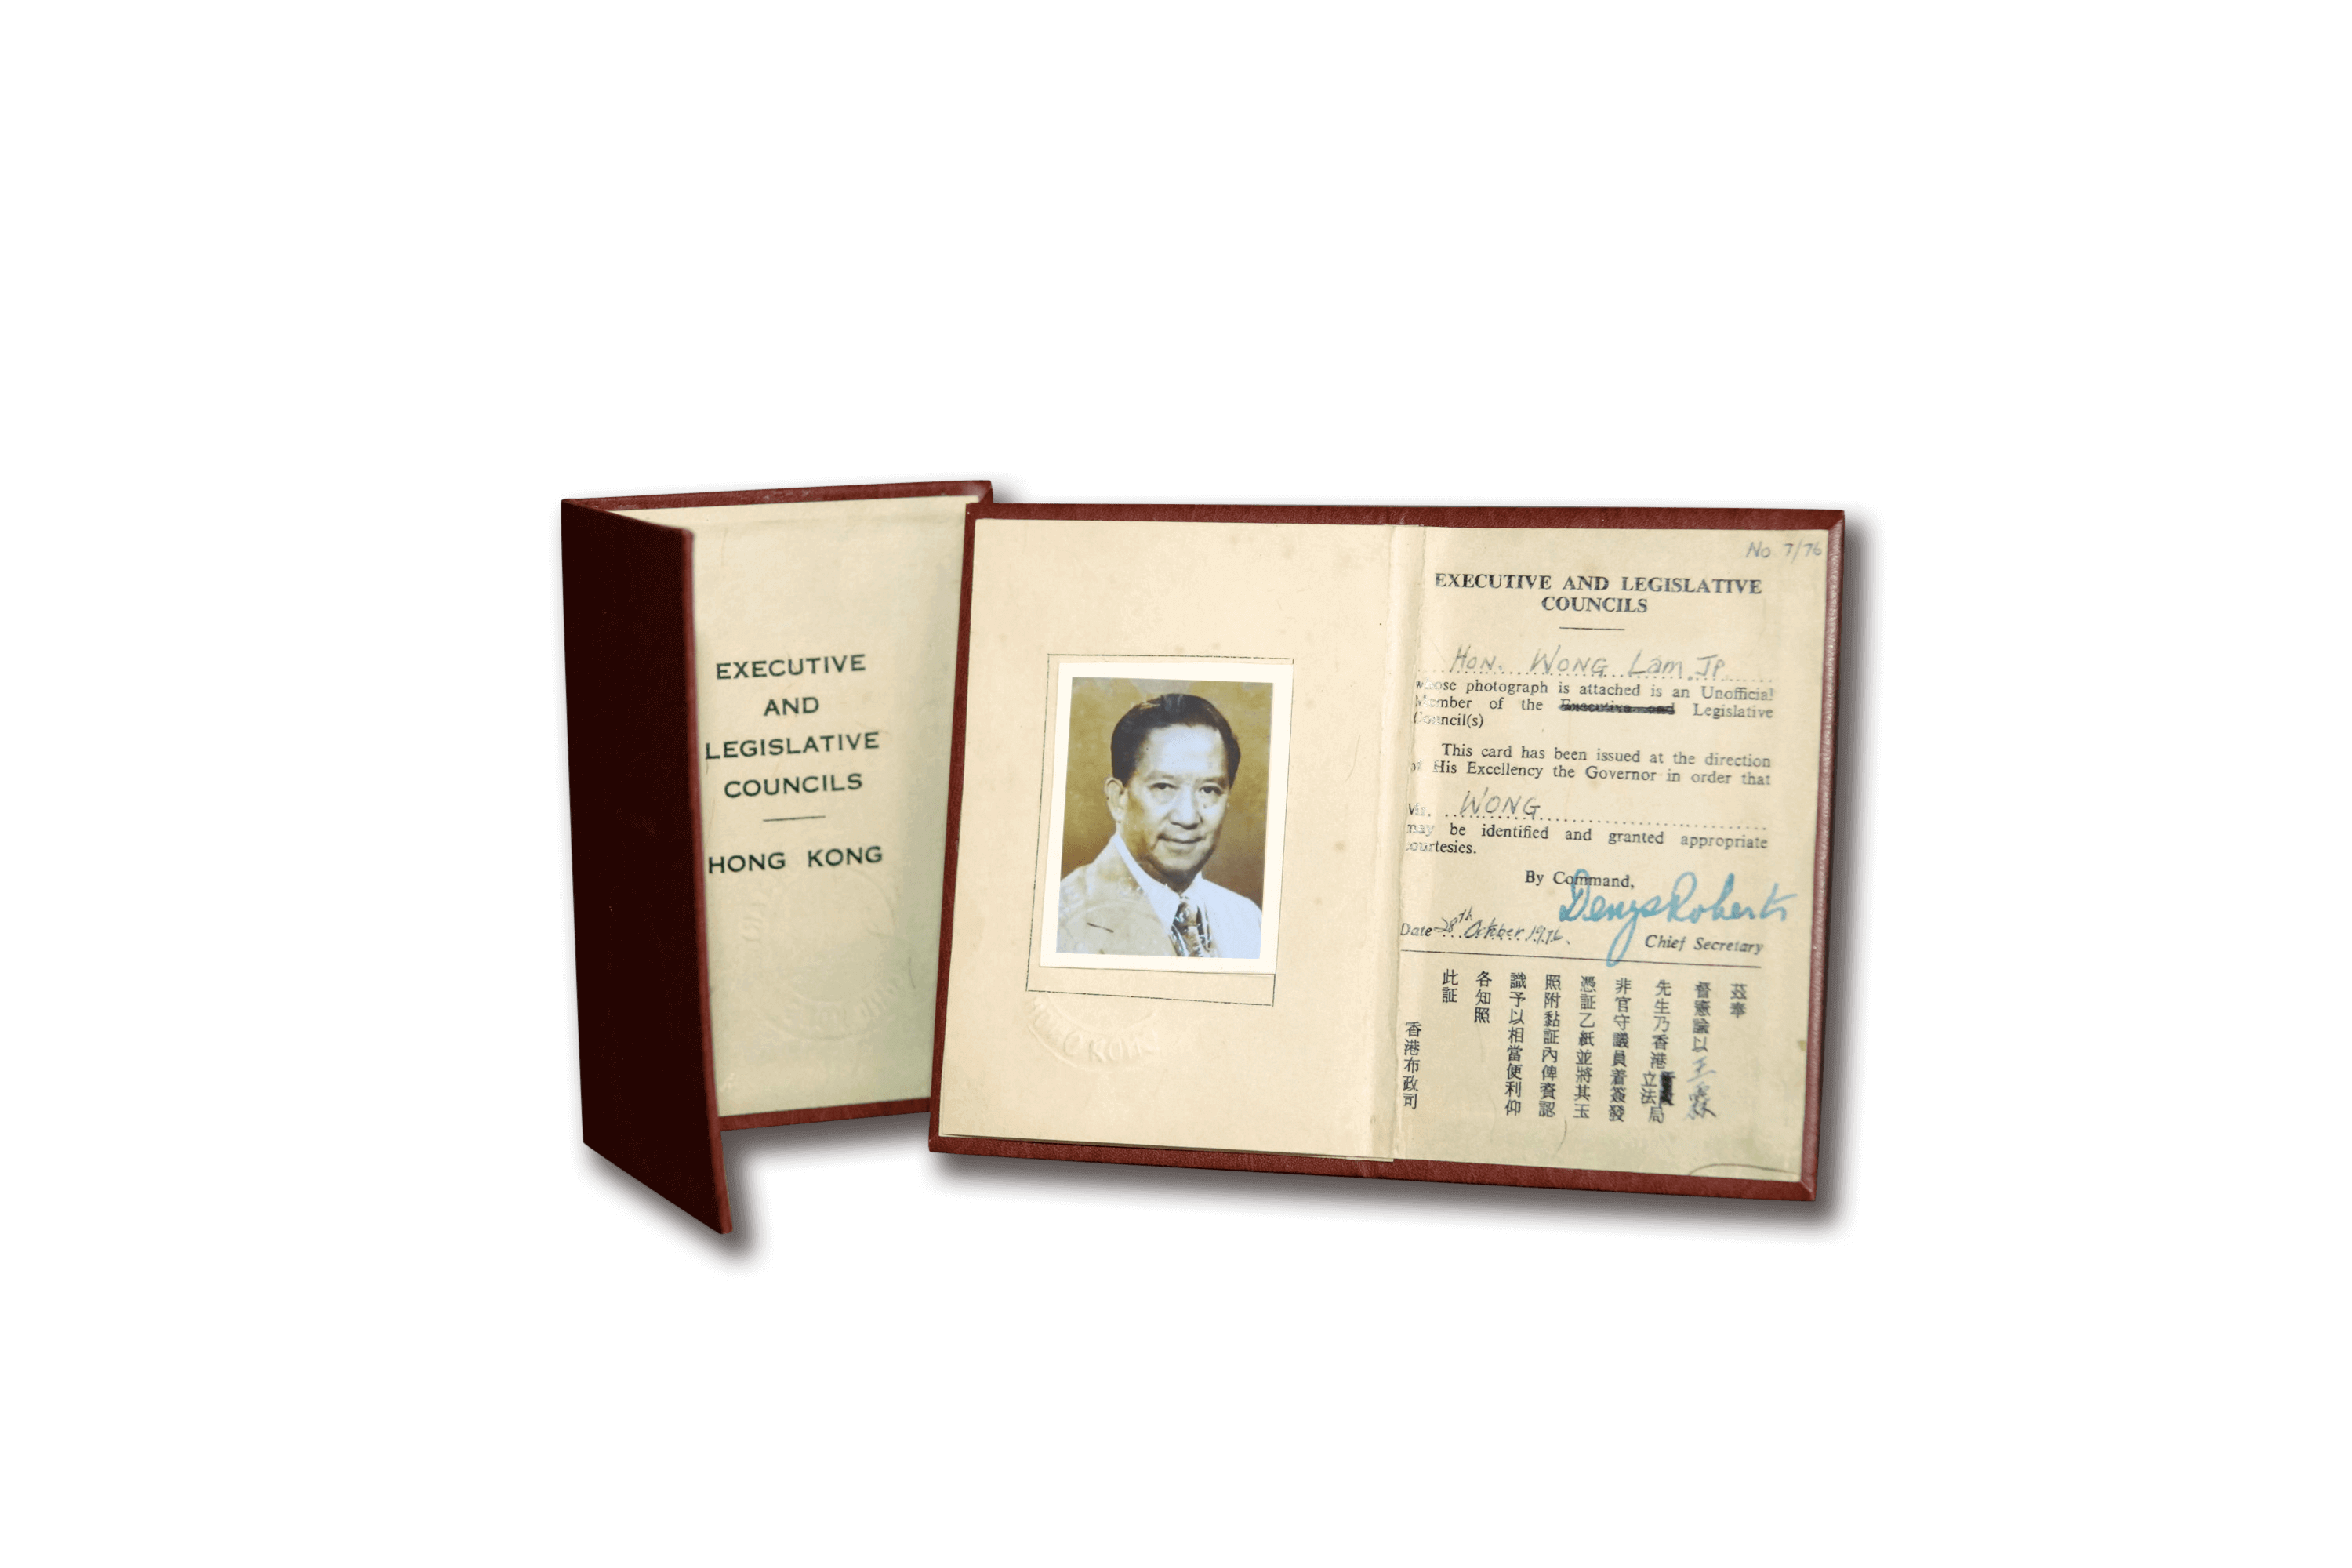 發給王霖(1919-2016)的議員身份證件 (複製本)。